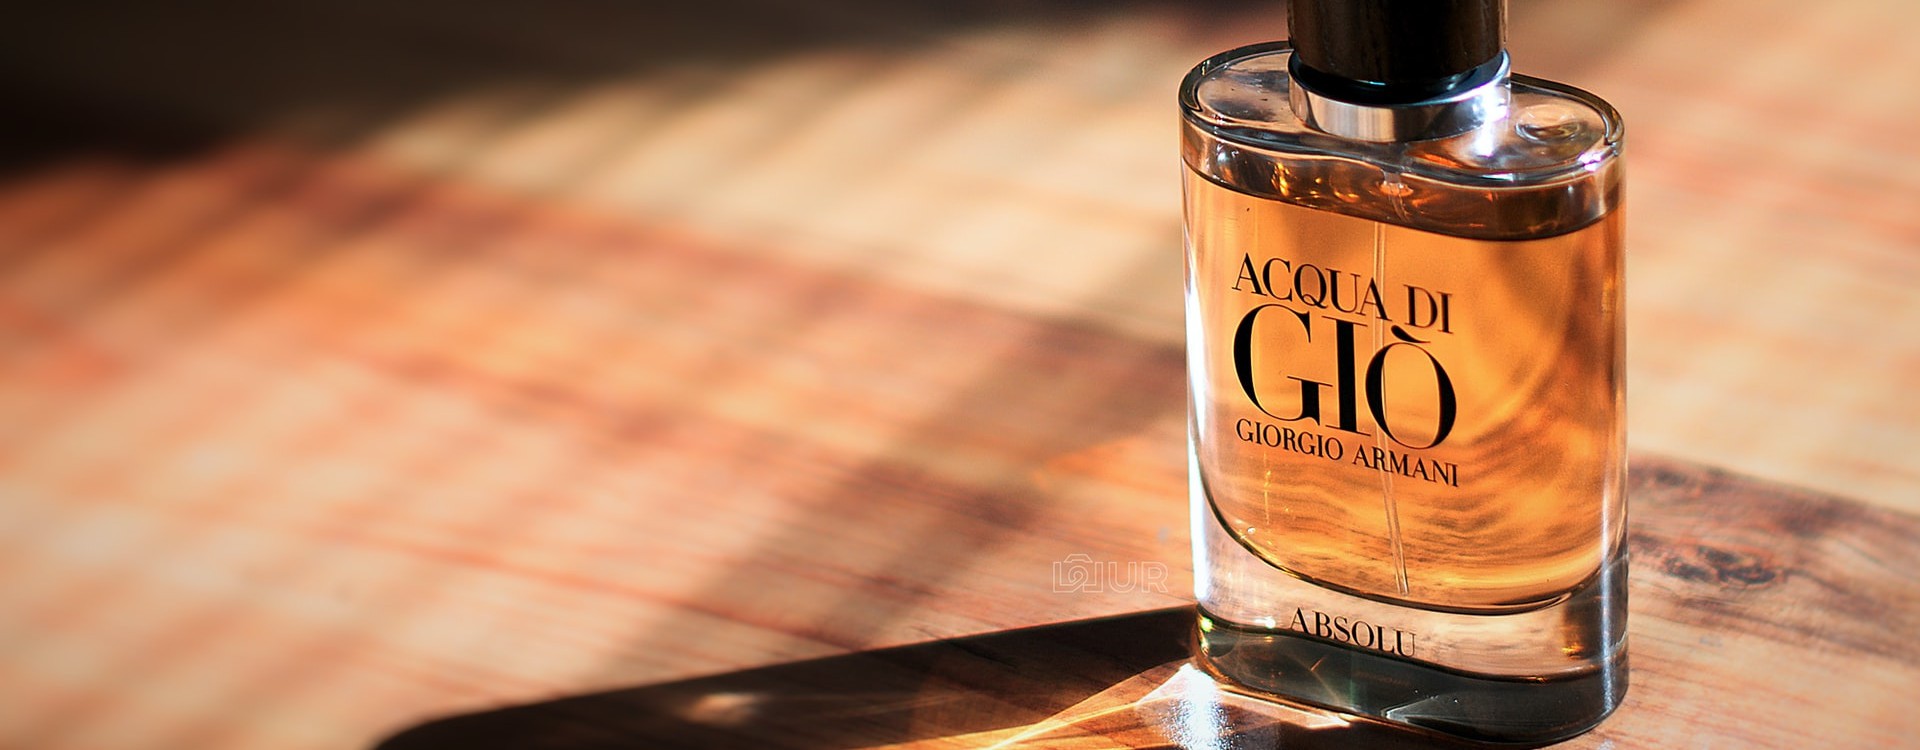 Perfumy Giorgio Armani - dopasuj zapach do własnych potrzeb